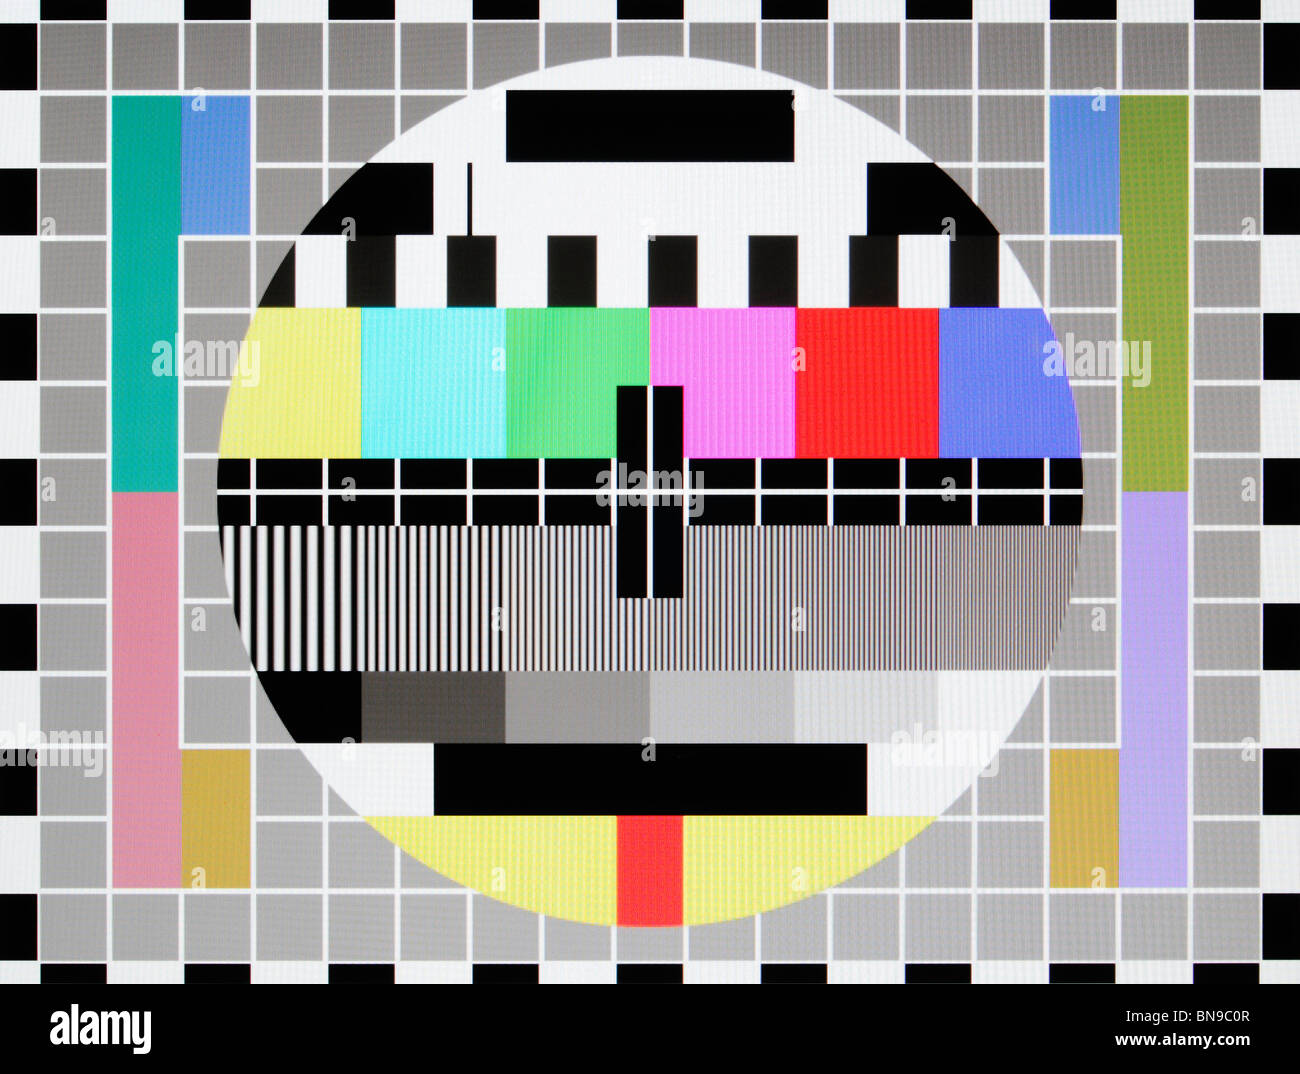 Tv test card -Fotos und -Bildmaterial in hoher Auflösung – Alamy